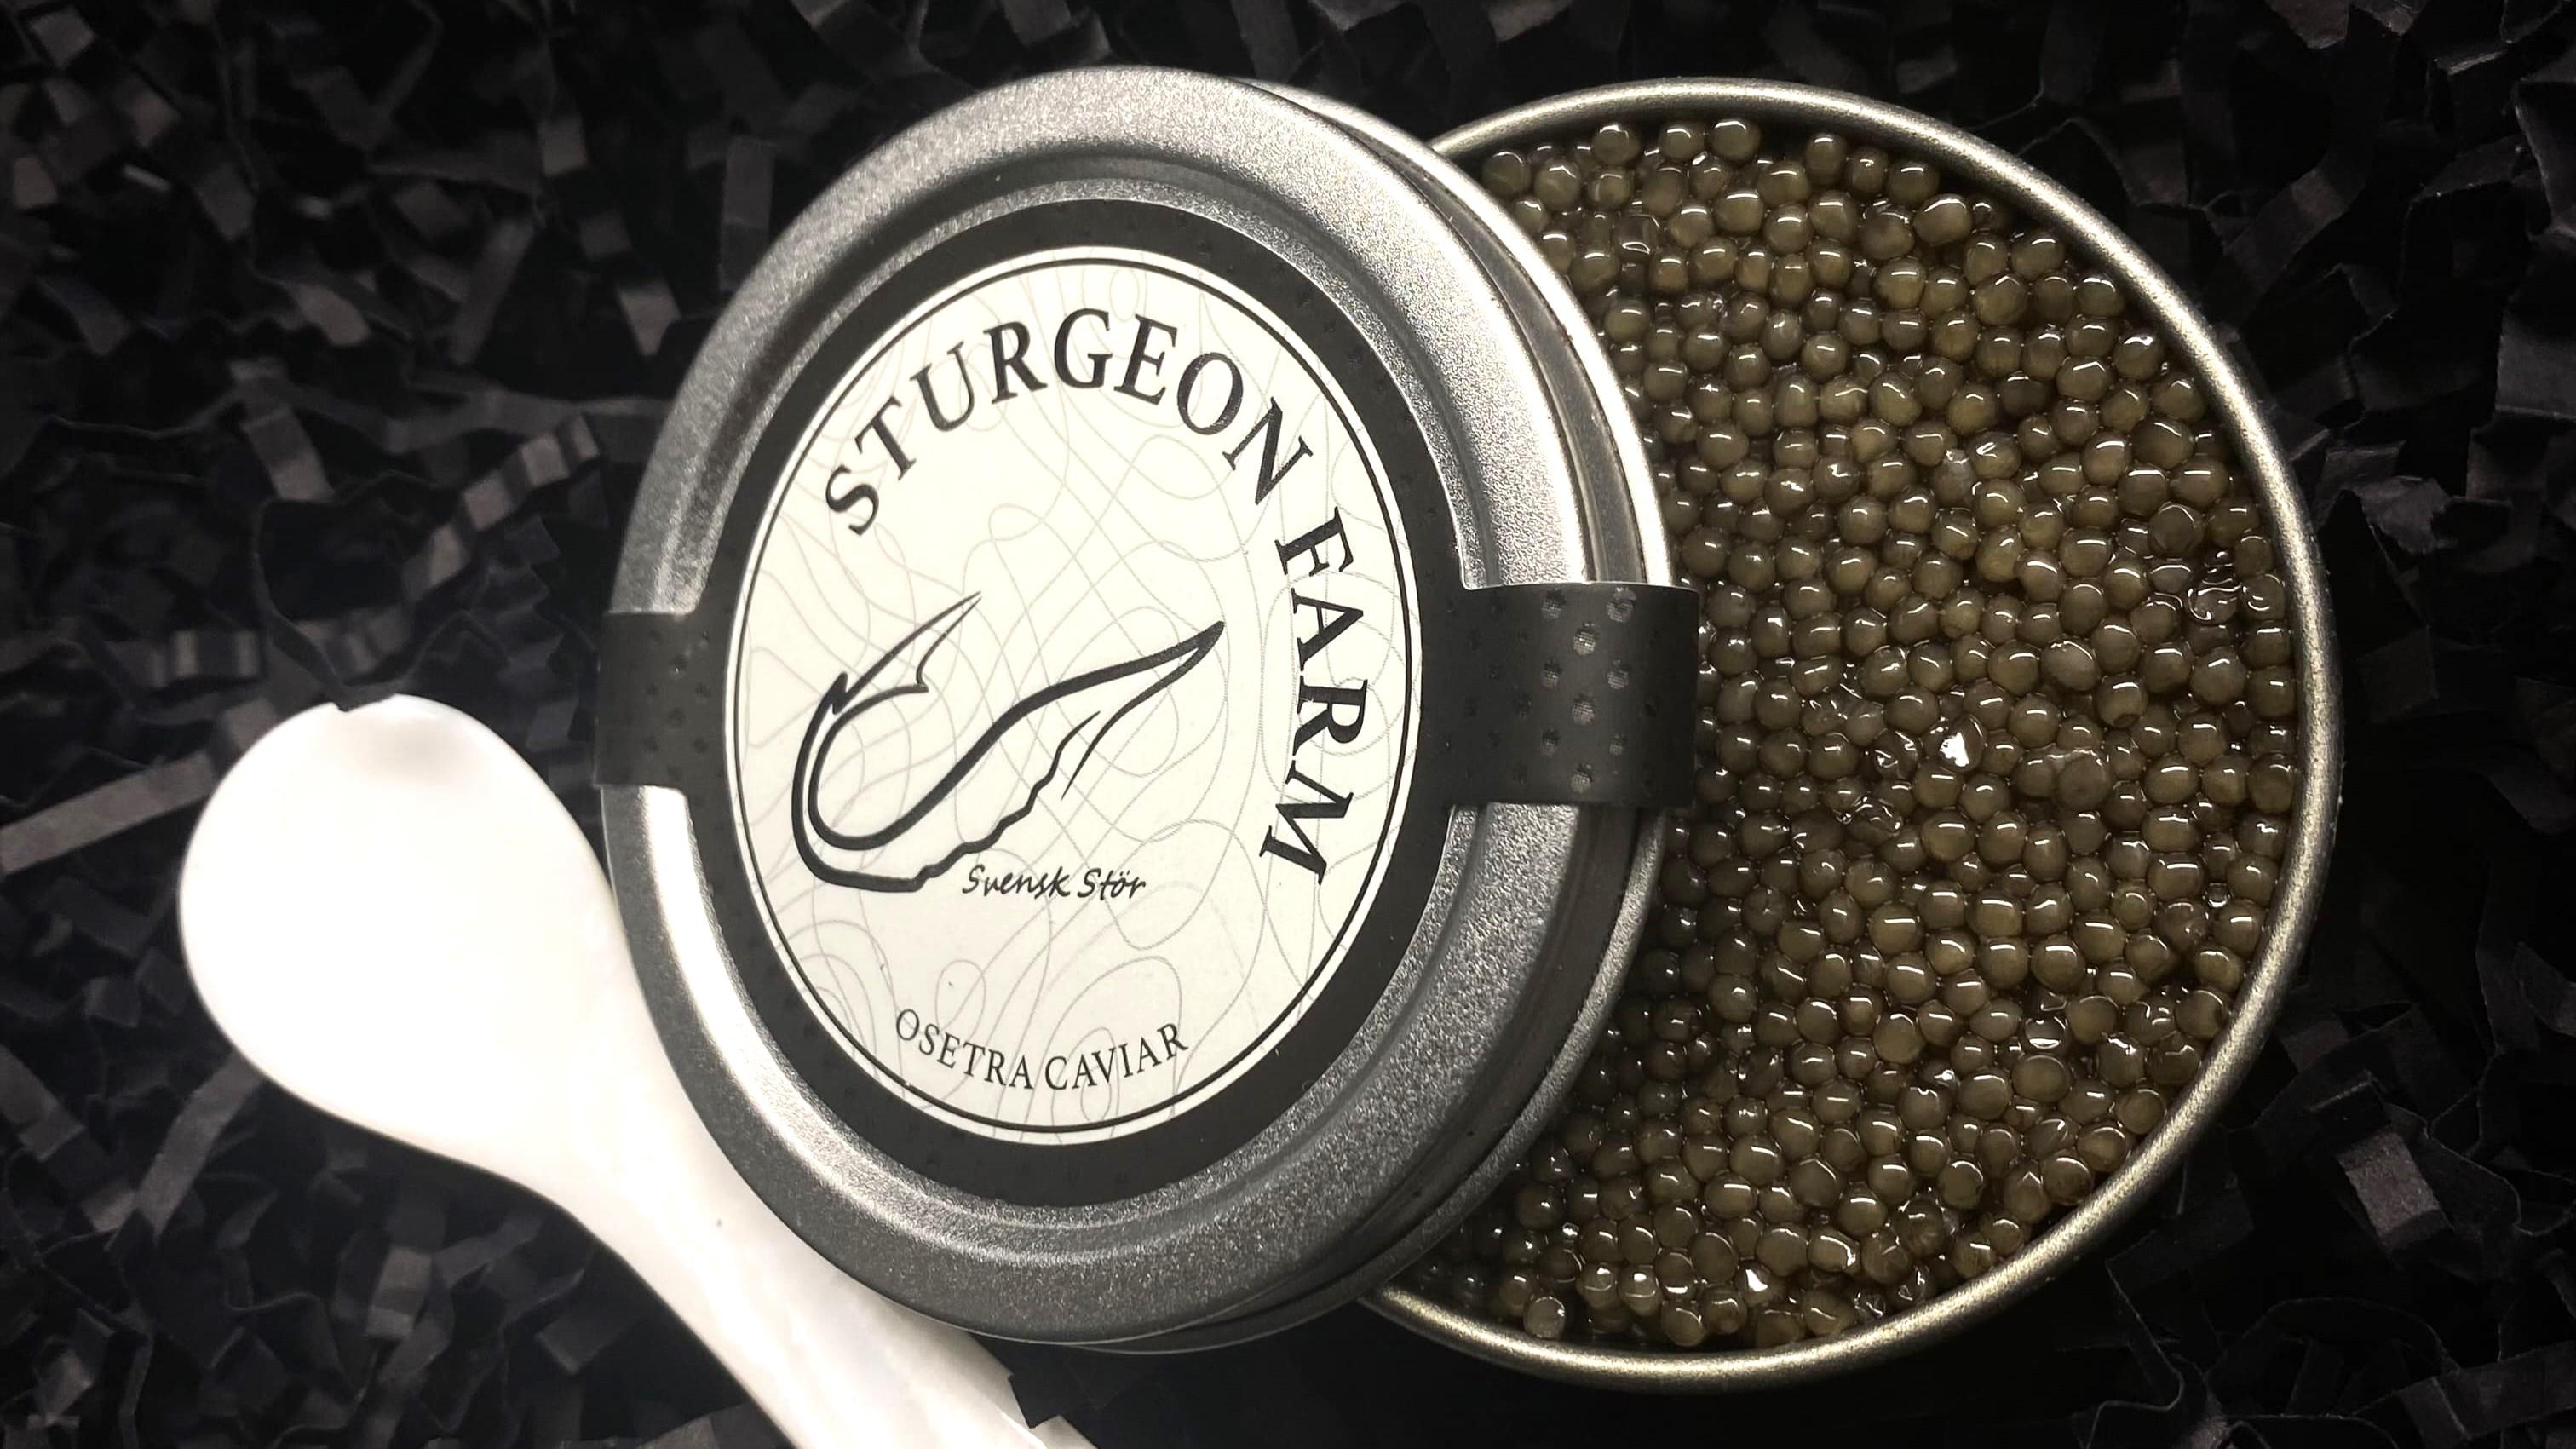 Pärlemorsked och kaviar från Svensk Stör. 